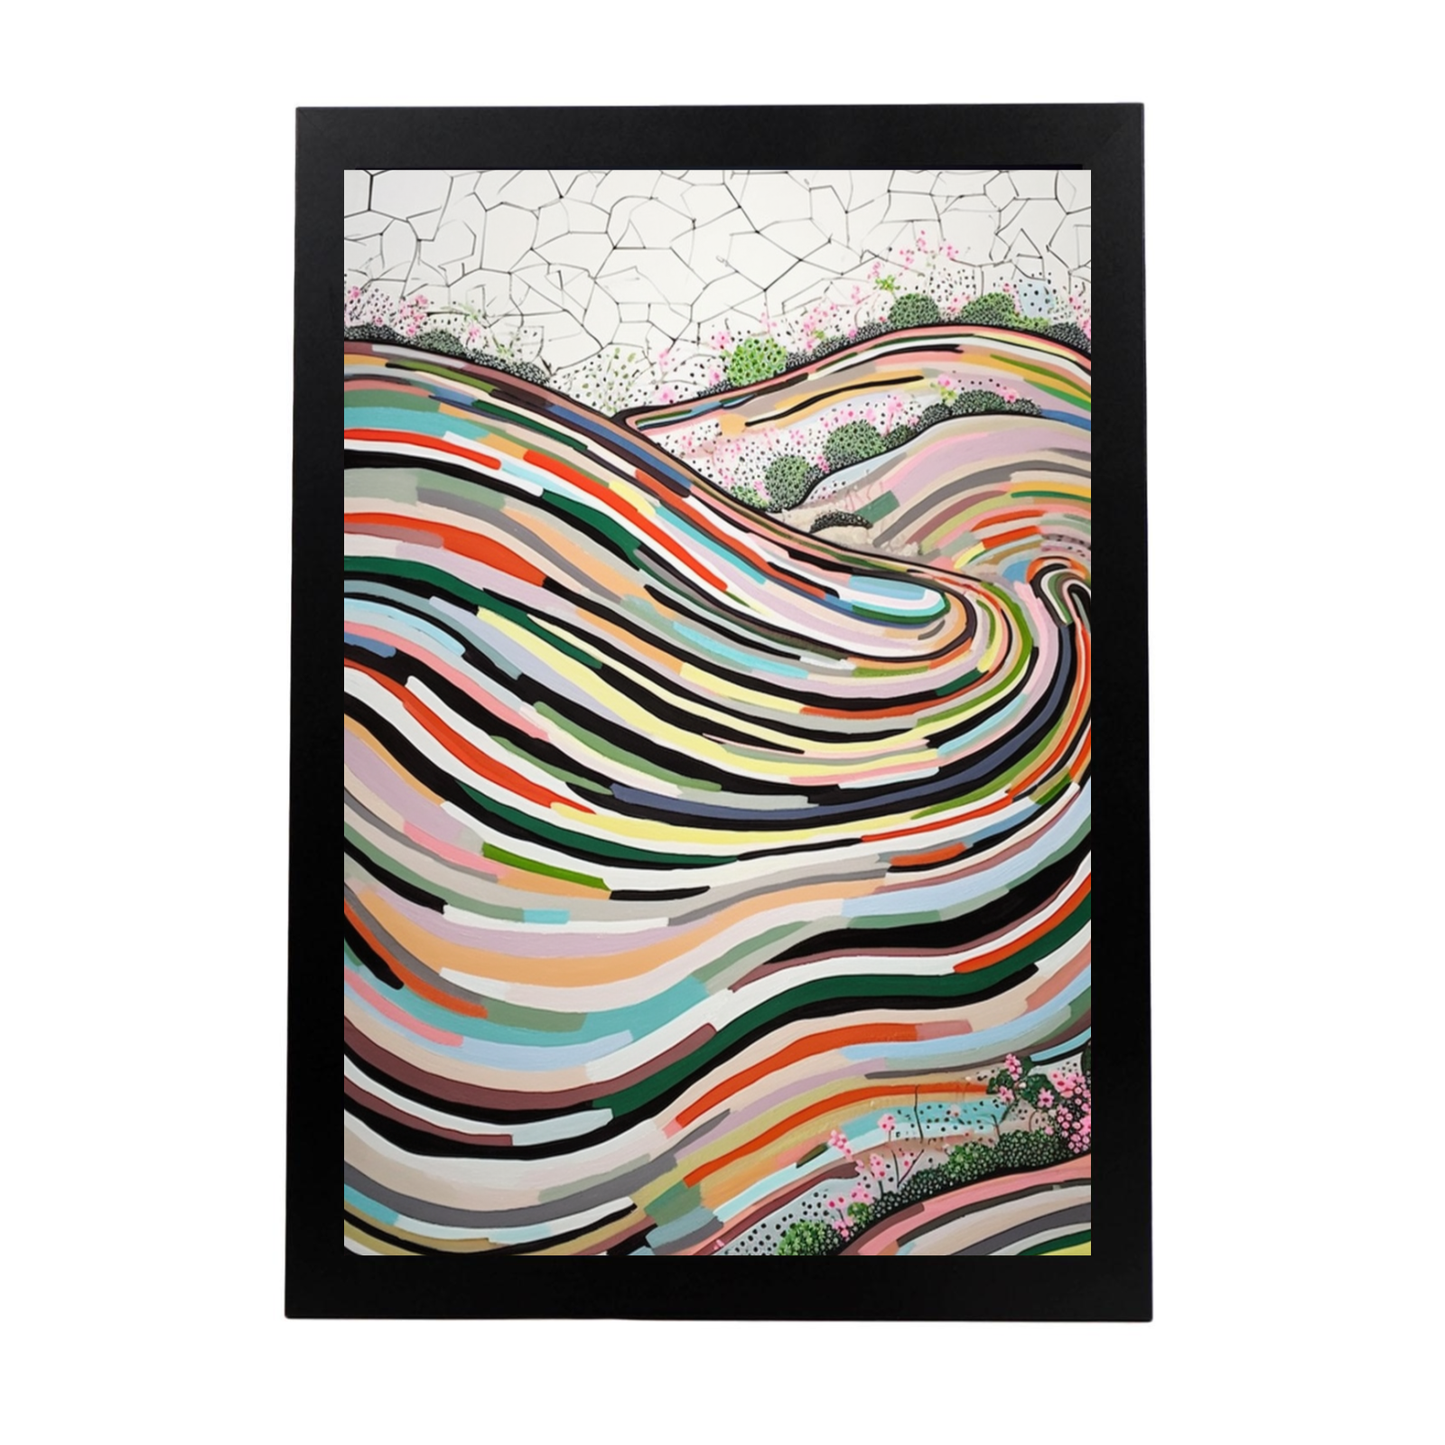 Póster de pintura abstracta con líneas curvas creada por Wu Guanzho